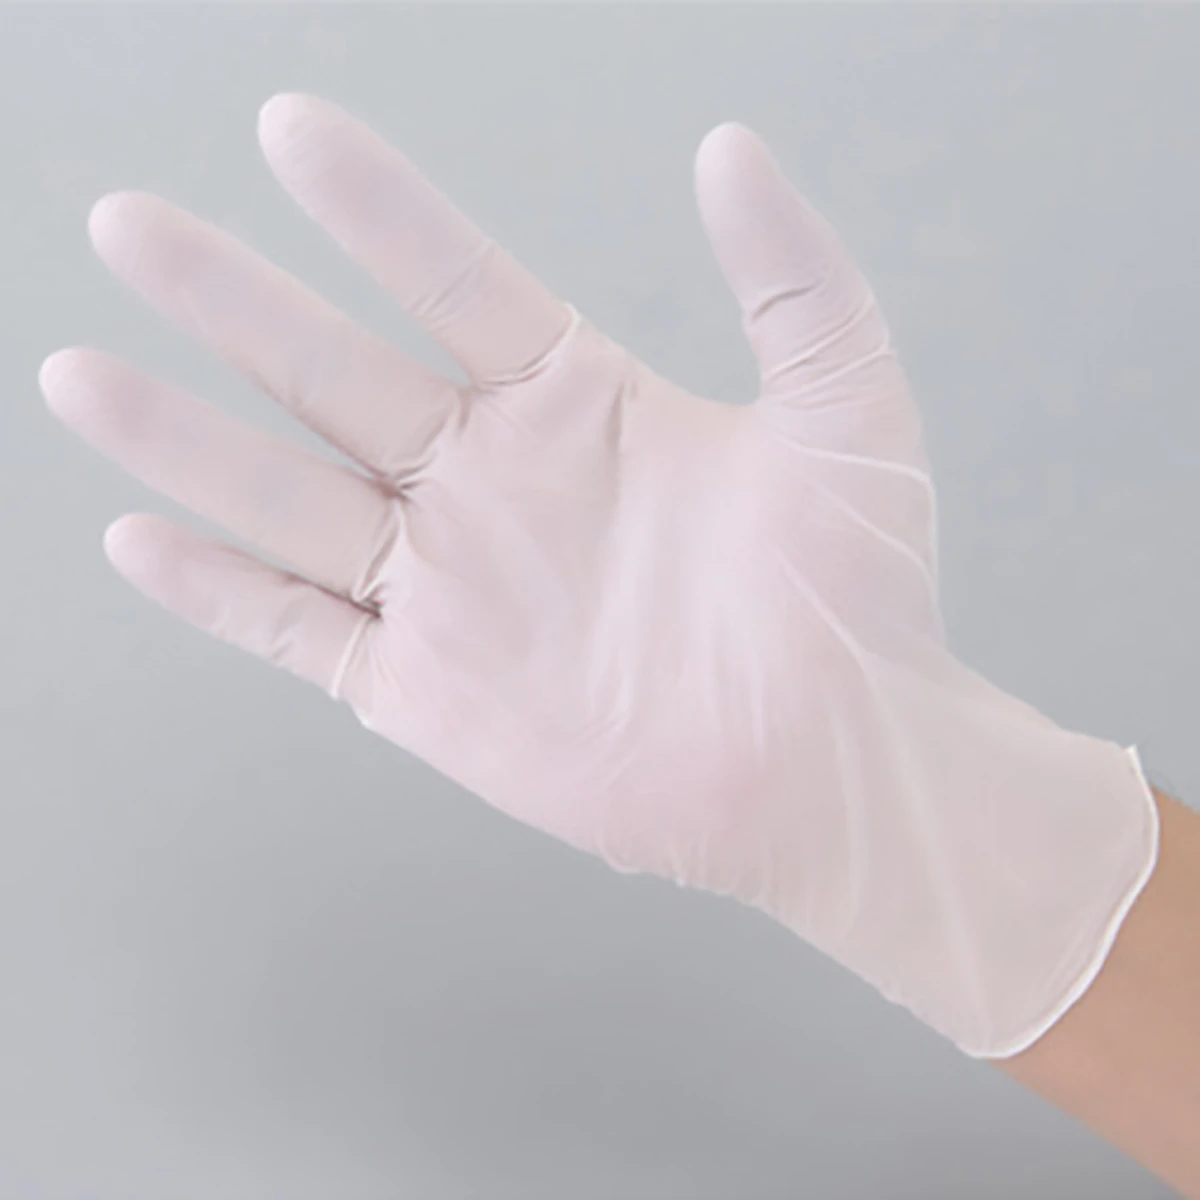 公式】パーマンショップ-ニトリルゴム手袋 粉なし M: 身体保護・安全 